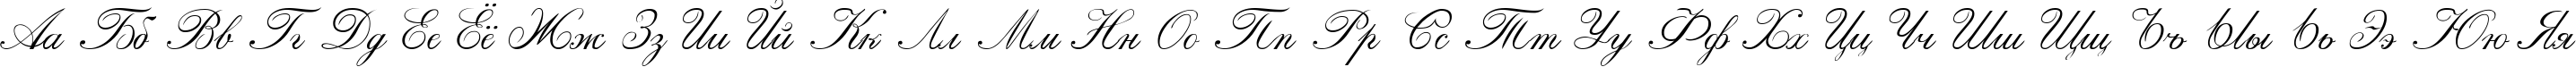 Пример написания русского алфавита шрифтом Calligraphia One